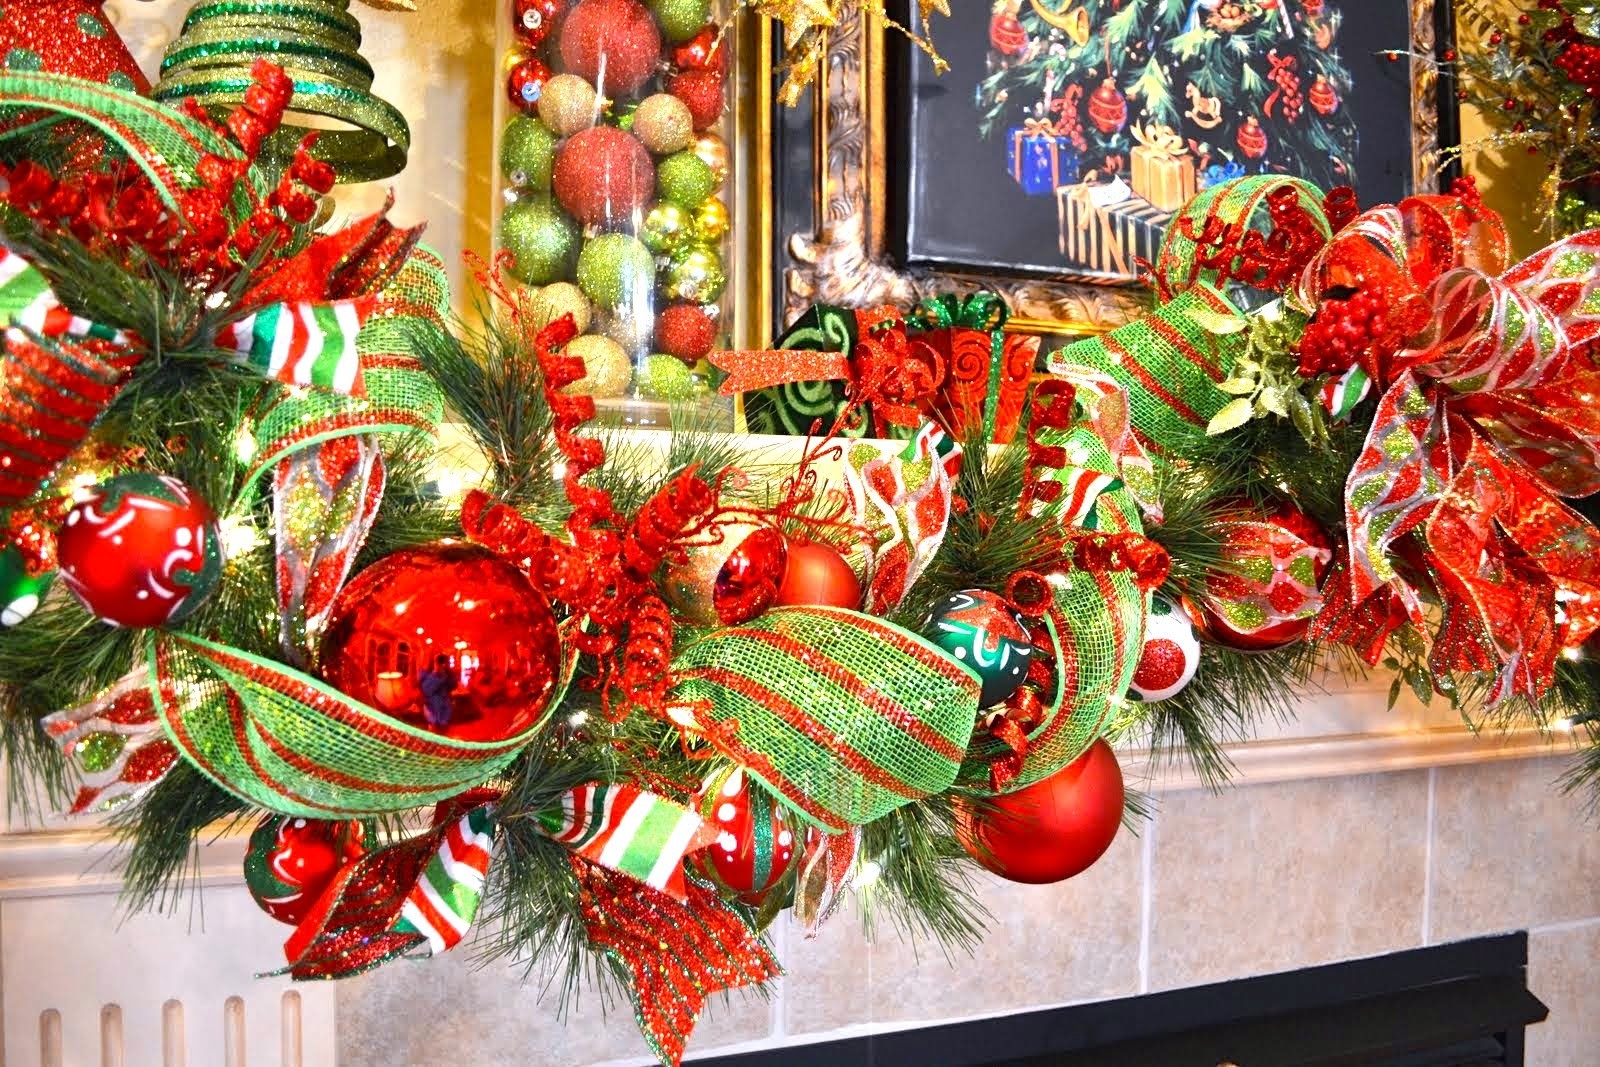 How to decorate a Garland for Christmas| Como Decorar una Guirnalda para navidad